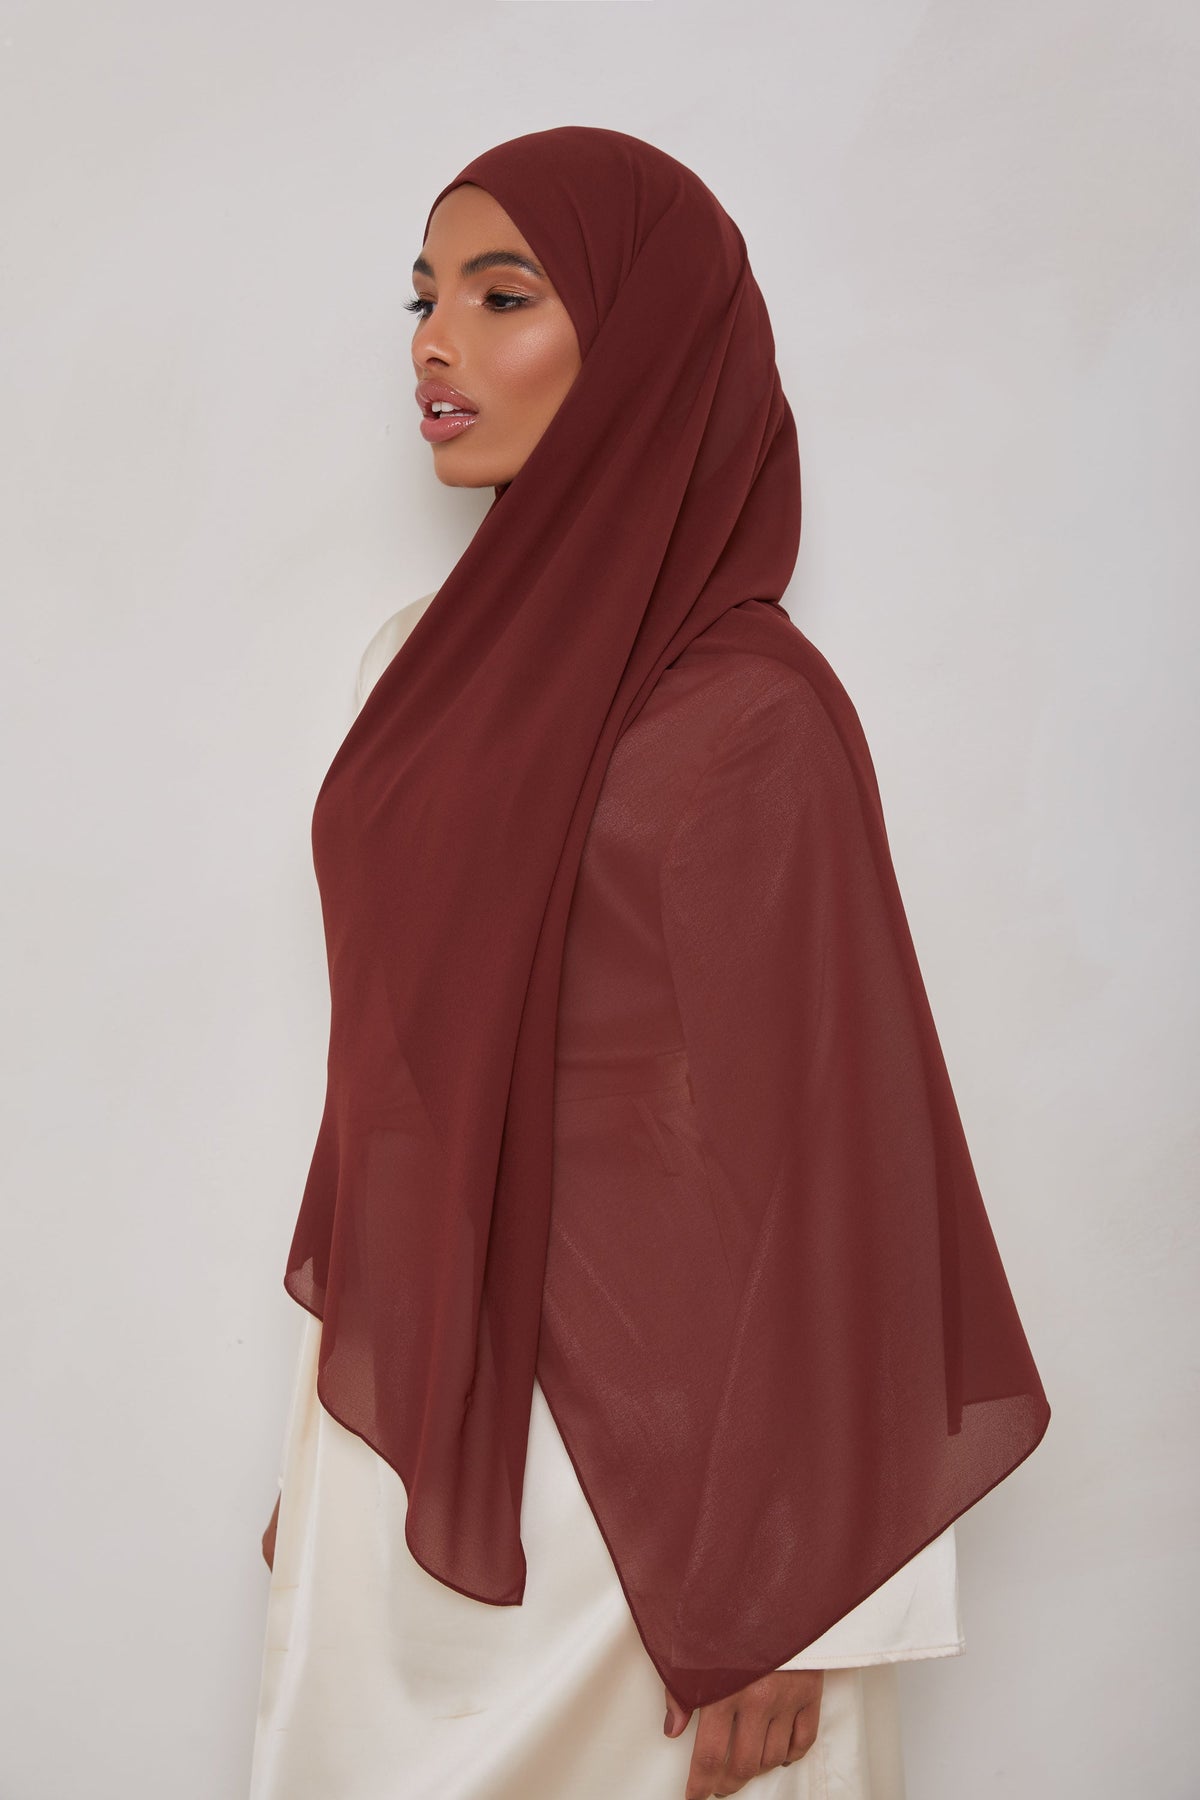 Essential Chiffon Hijab - Sable Scarves & Shawls epschoolboard 